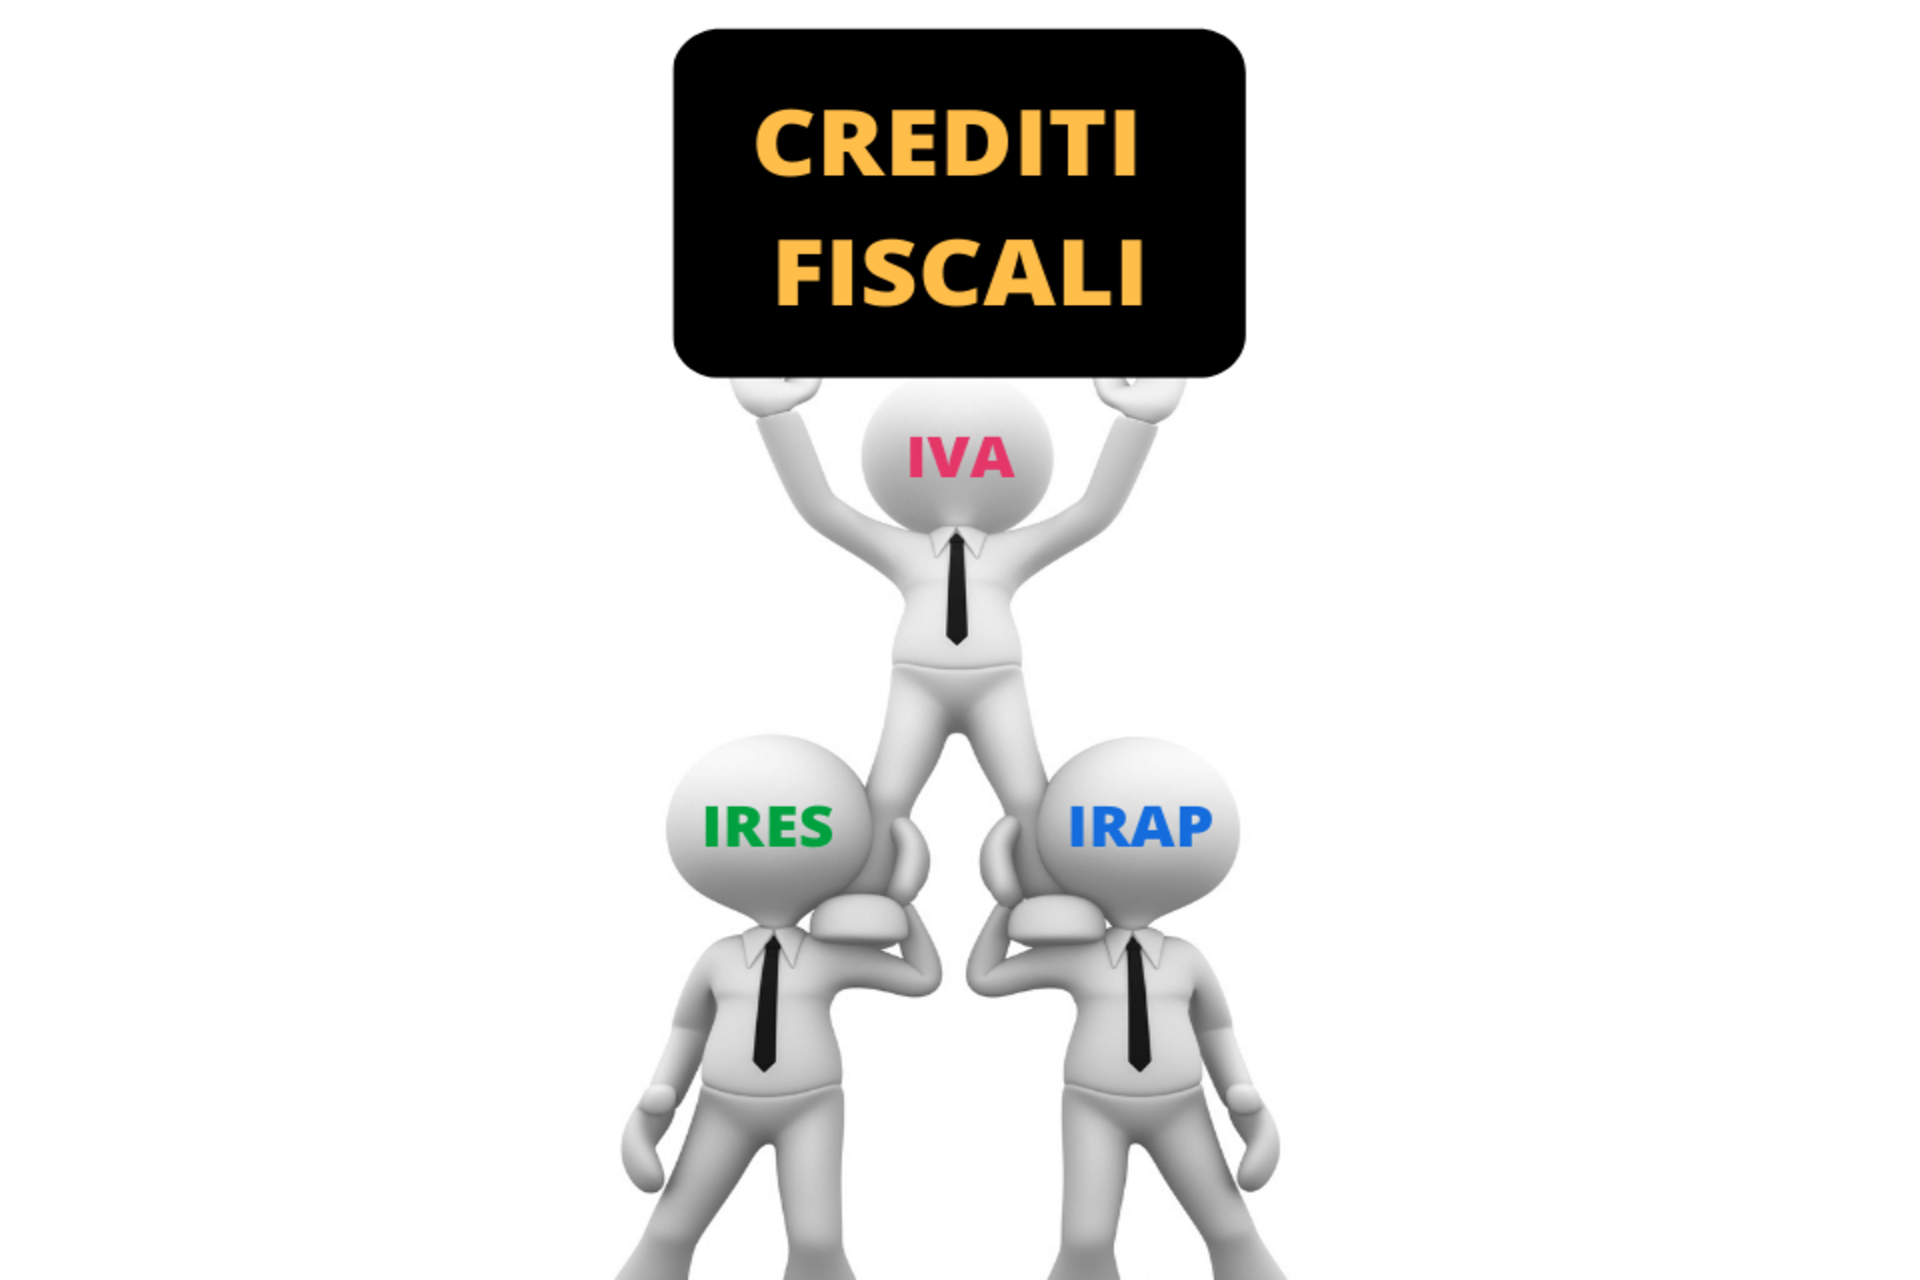 Crediti fiscali: quali sono le differenze?